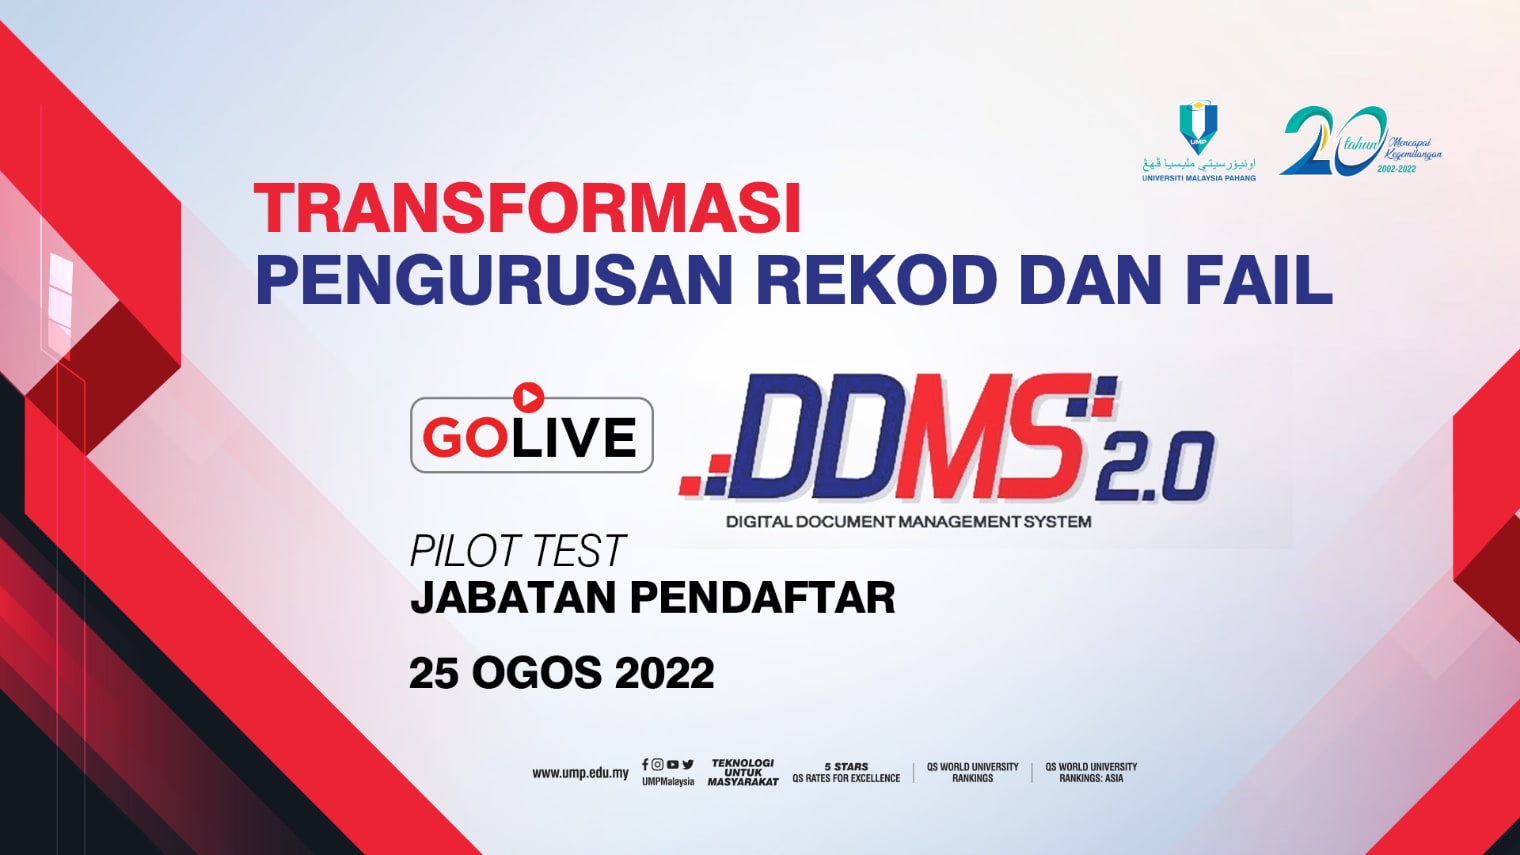 ump-ddms-live-2022